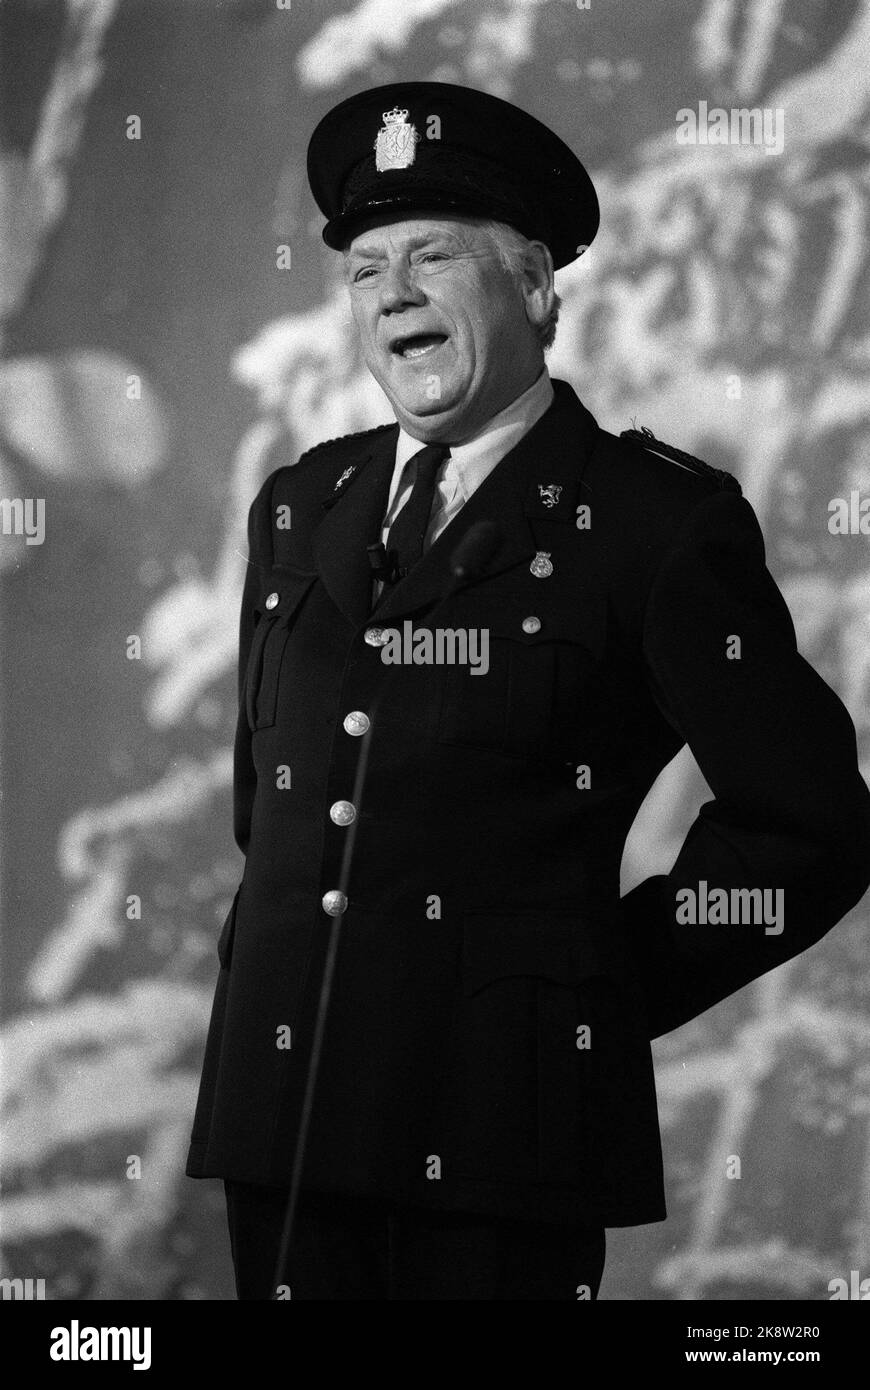 Oslo 19871116. Chatten Sie Noirs 75.-jähriges Jubiläum. Arve Opsahl auf der Bühne. Hier in Polizeiuniform. Foto: Bjørn Sigurdsøn Stockfoto